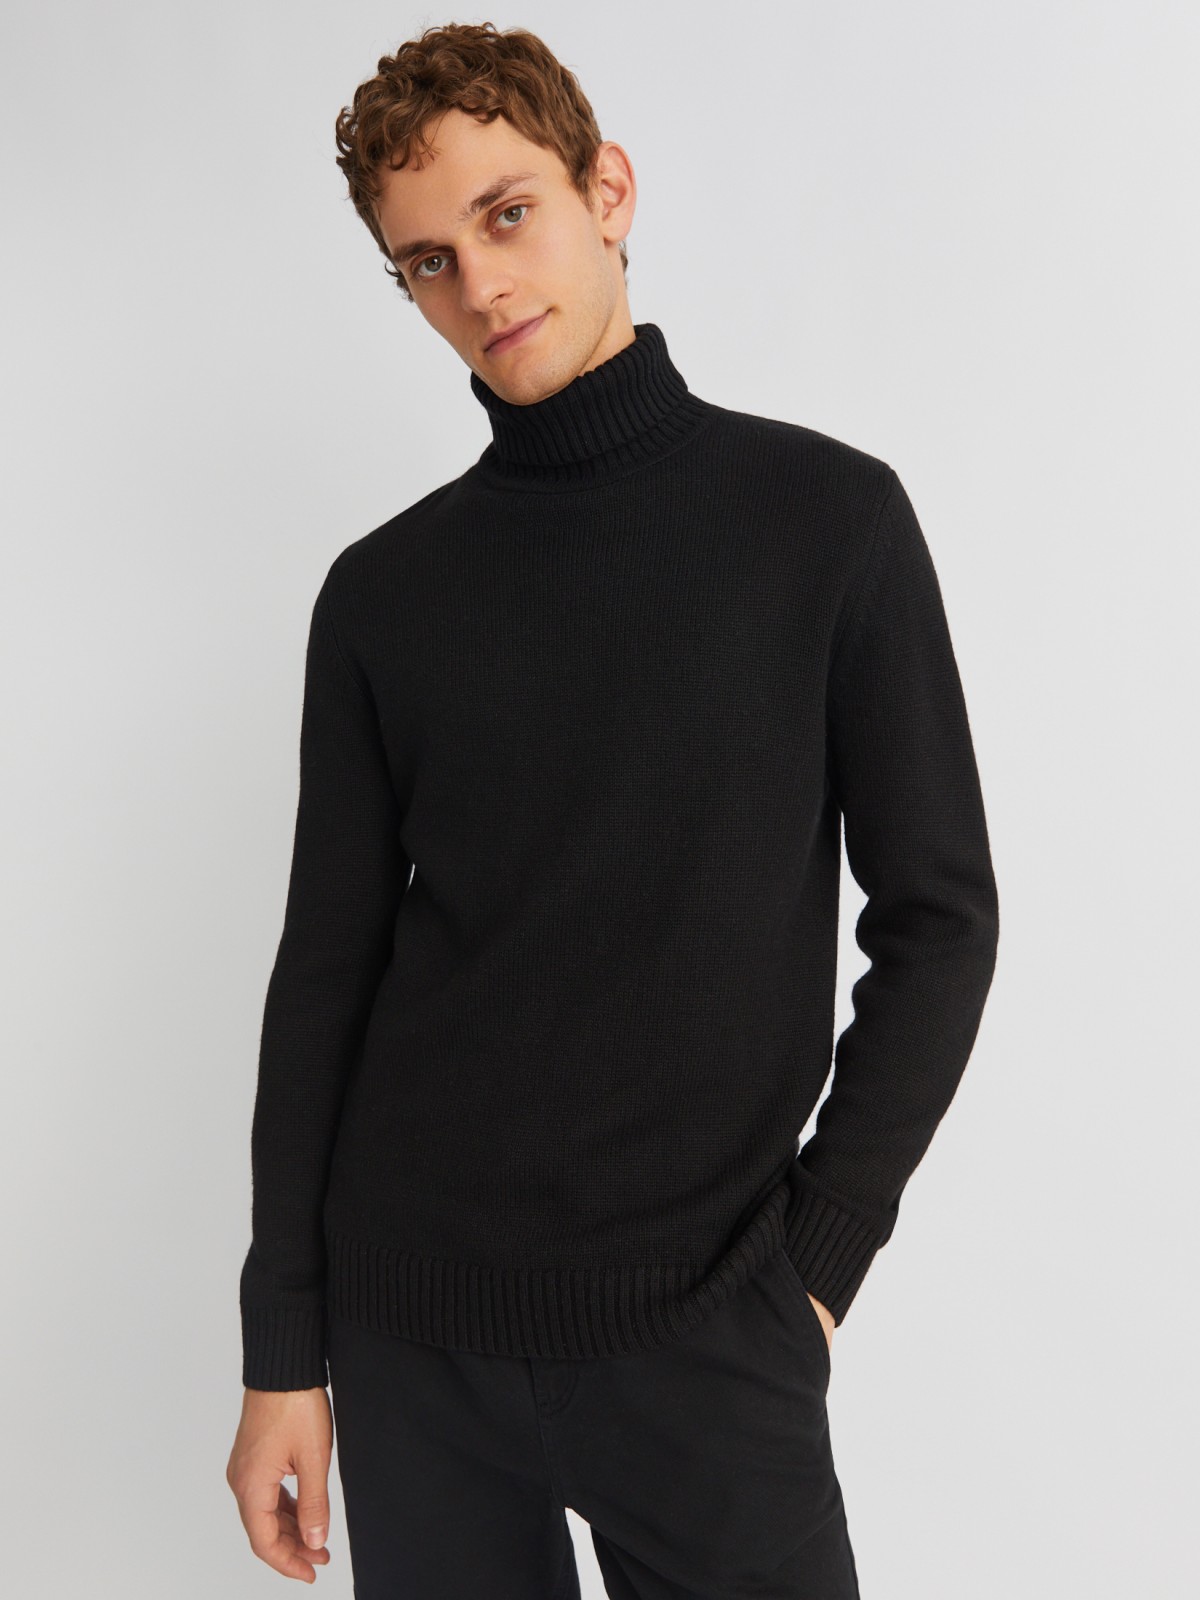 Вязаная шерстяная водолазка-свитер с горлом zolla 013436163072, цвет черный, размер M